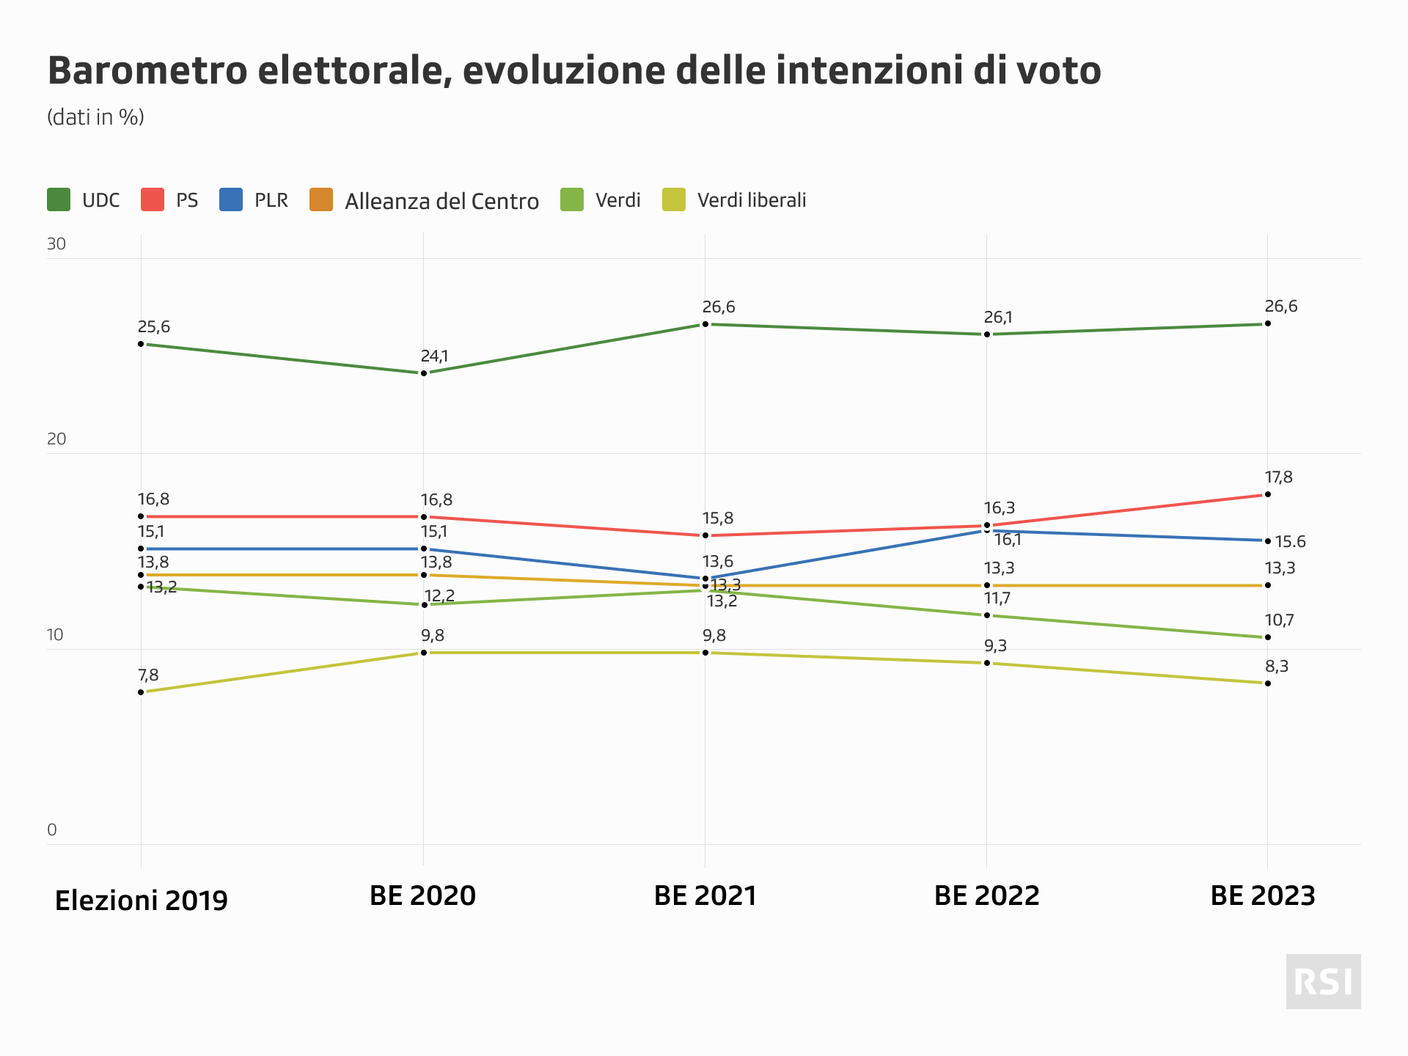 Sondaggio-barometro-elettorale-202303-evoluzione-intenzioni-voto.png